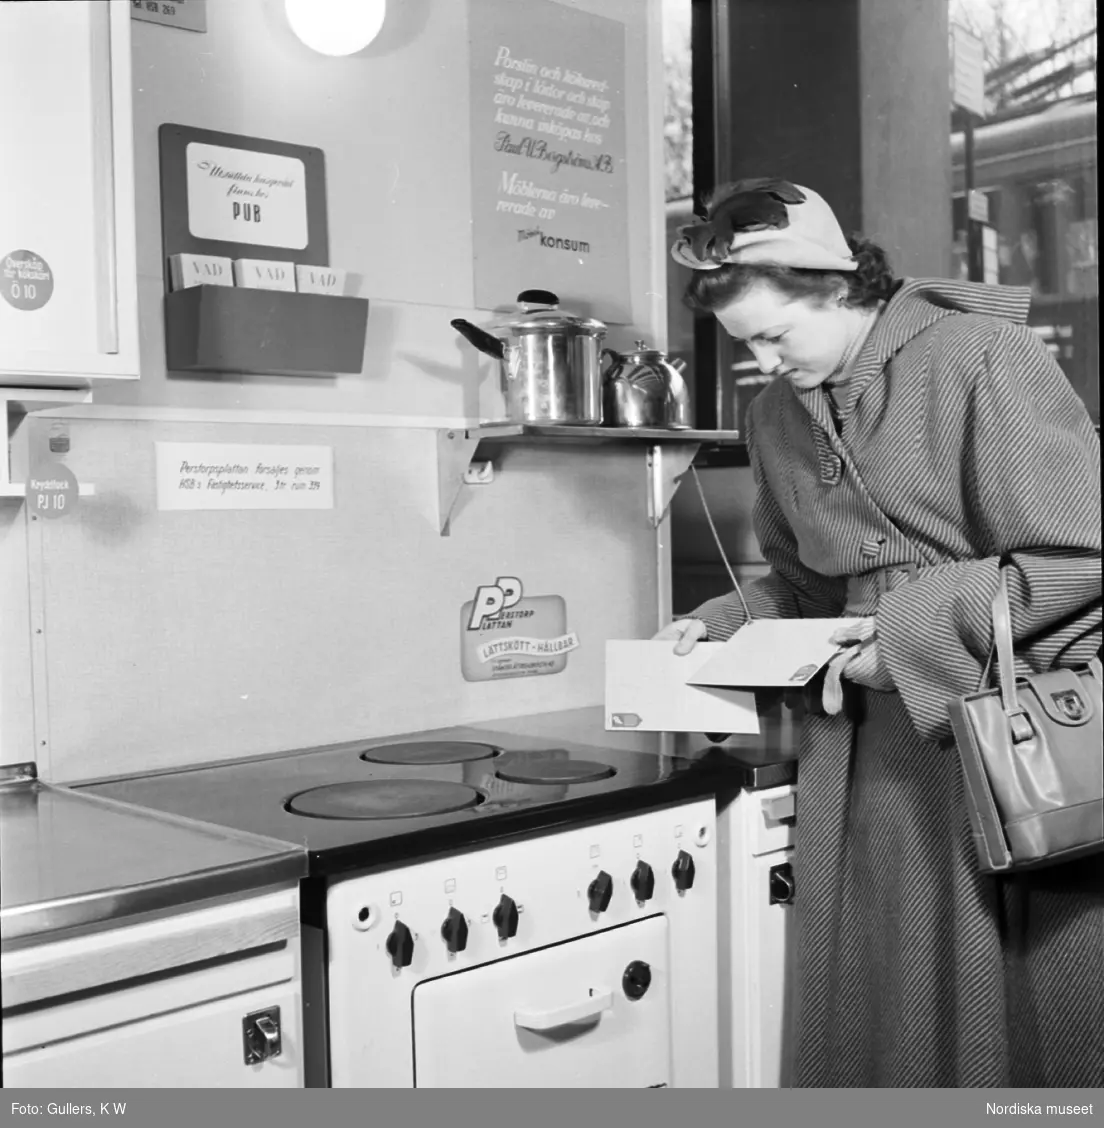 Affärsinteriör. Kvinna i köksmiljö jämför prov på plastlaminat, så kallad perstorpsplatta.